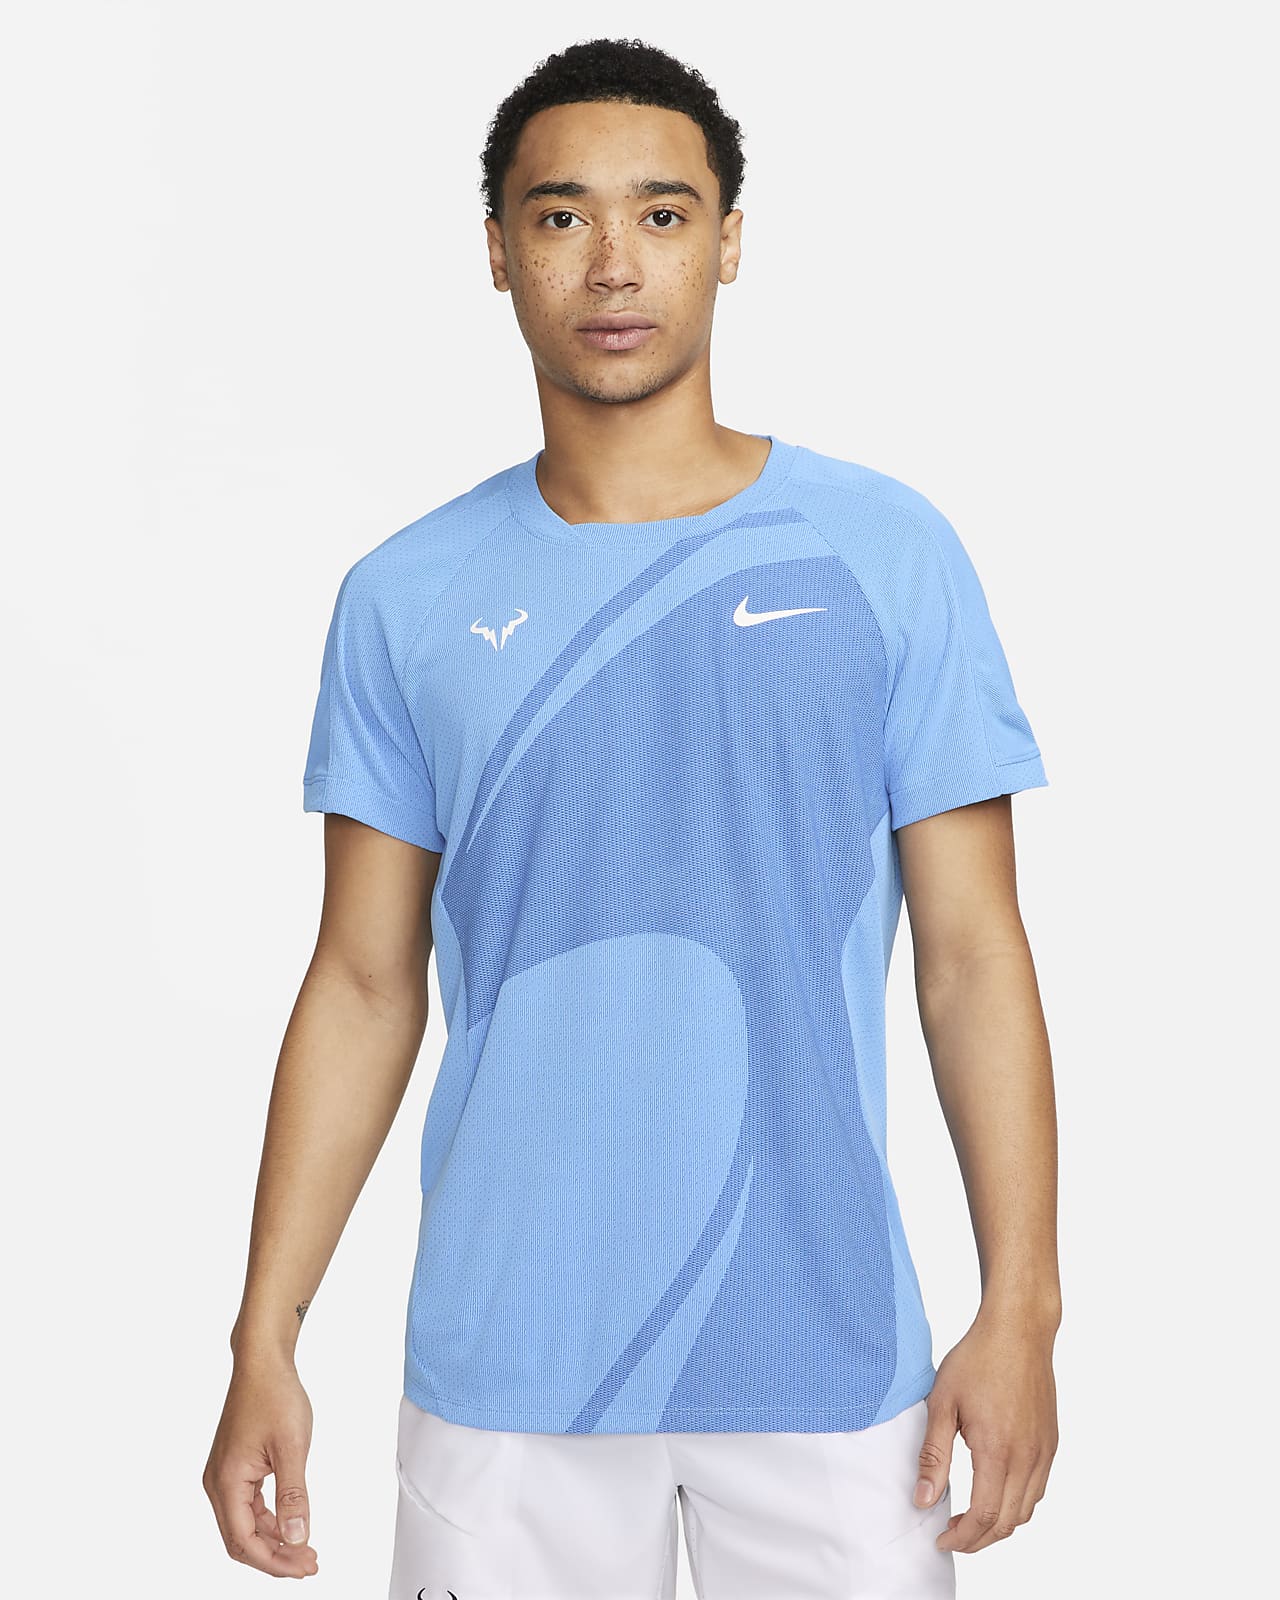 Rafa Nike Dri-FIT ADV 男子速干短袖网球上衣